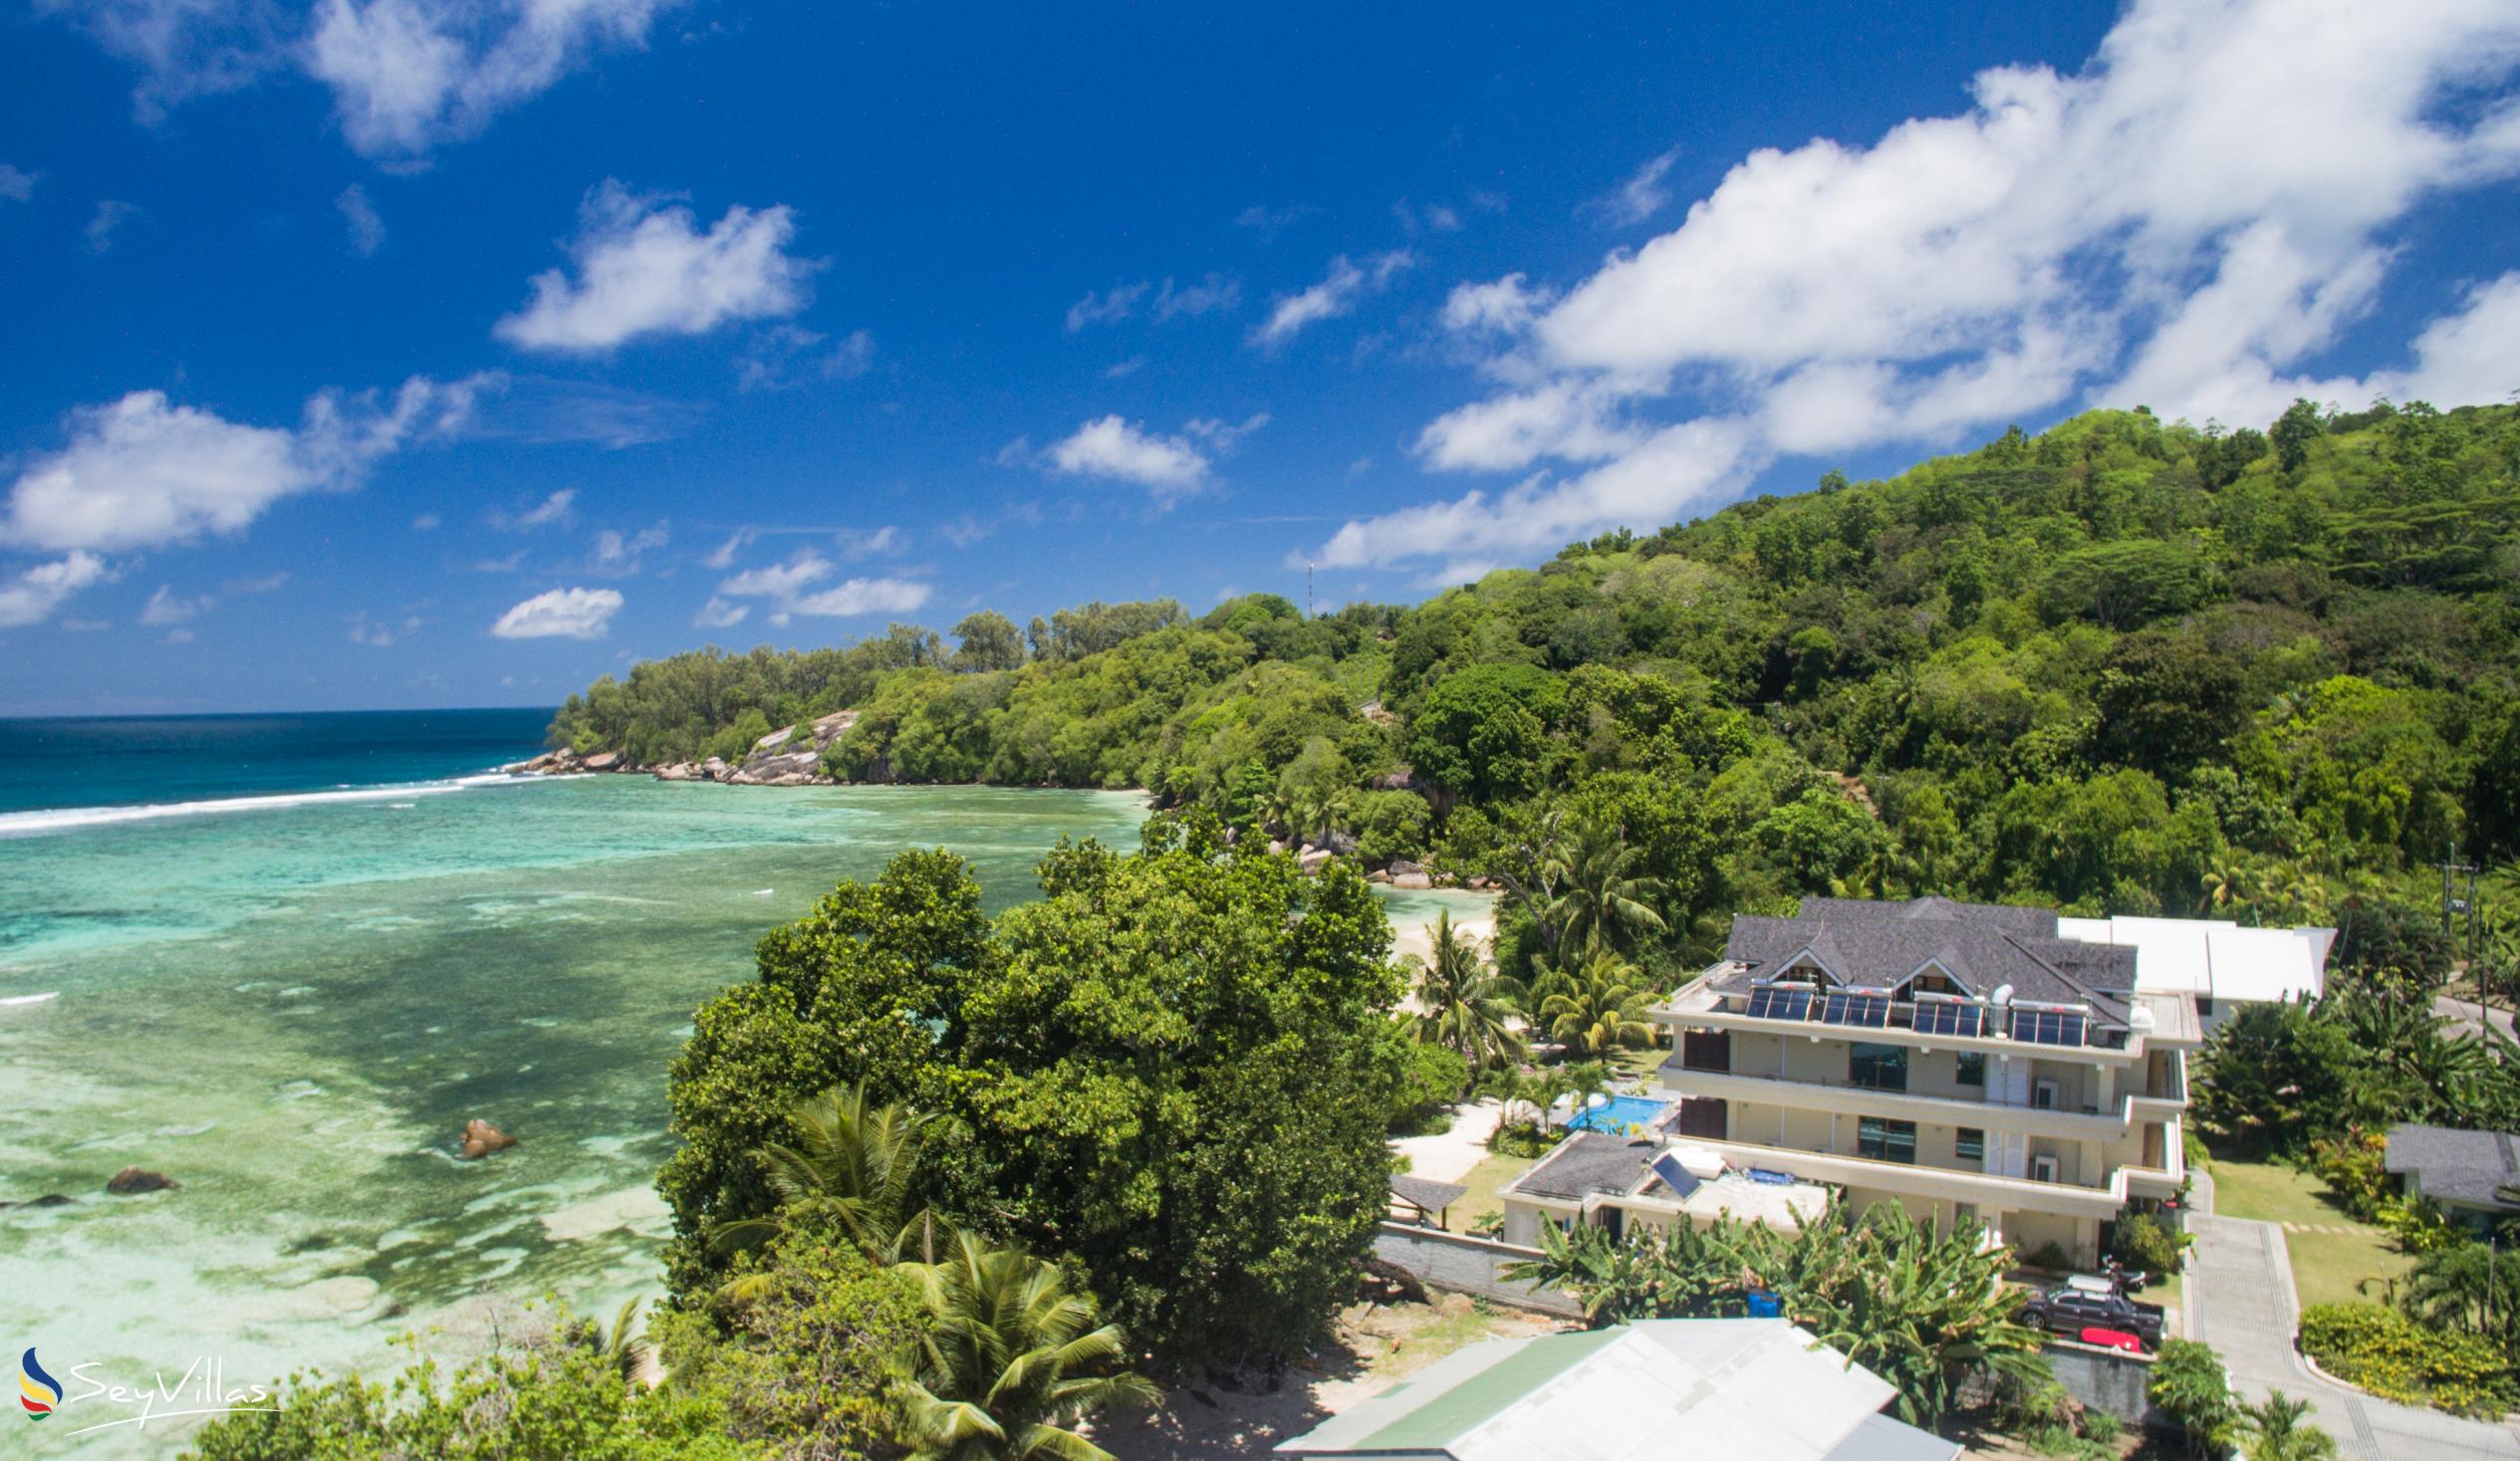 Photo 1: Crown Beach Hotel - Outdoor area - Mahé (Seychelles)